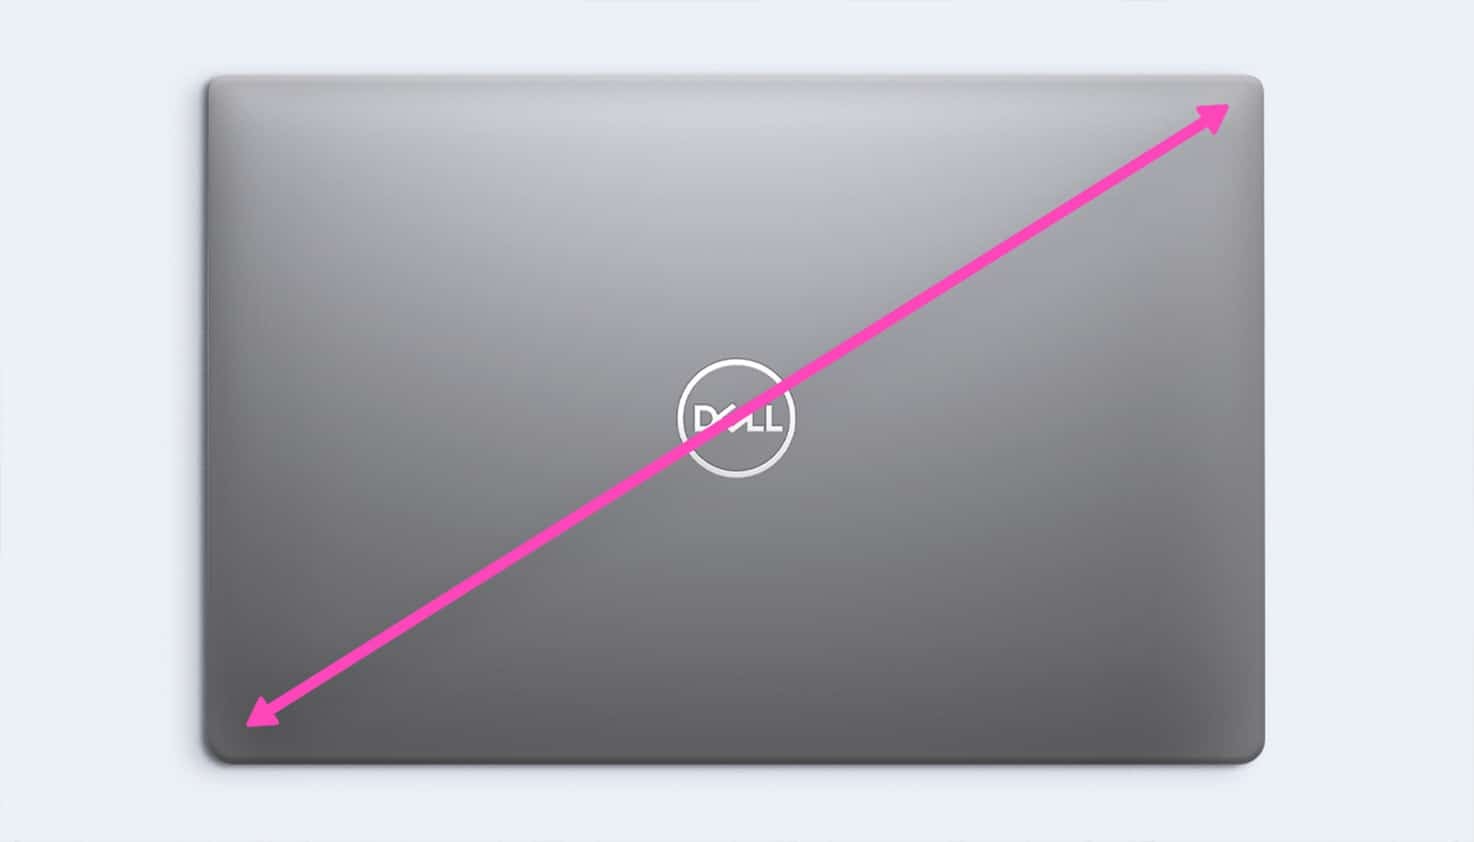 Een Windows laptop van Dell, wordt opgemeten met meetlint om erachter te komen hoeveel inchmaat de Dell laptop is.